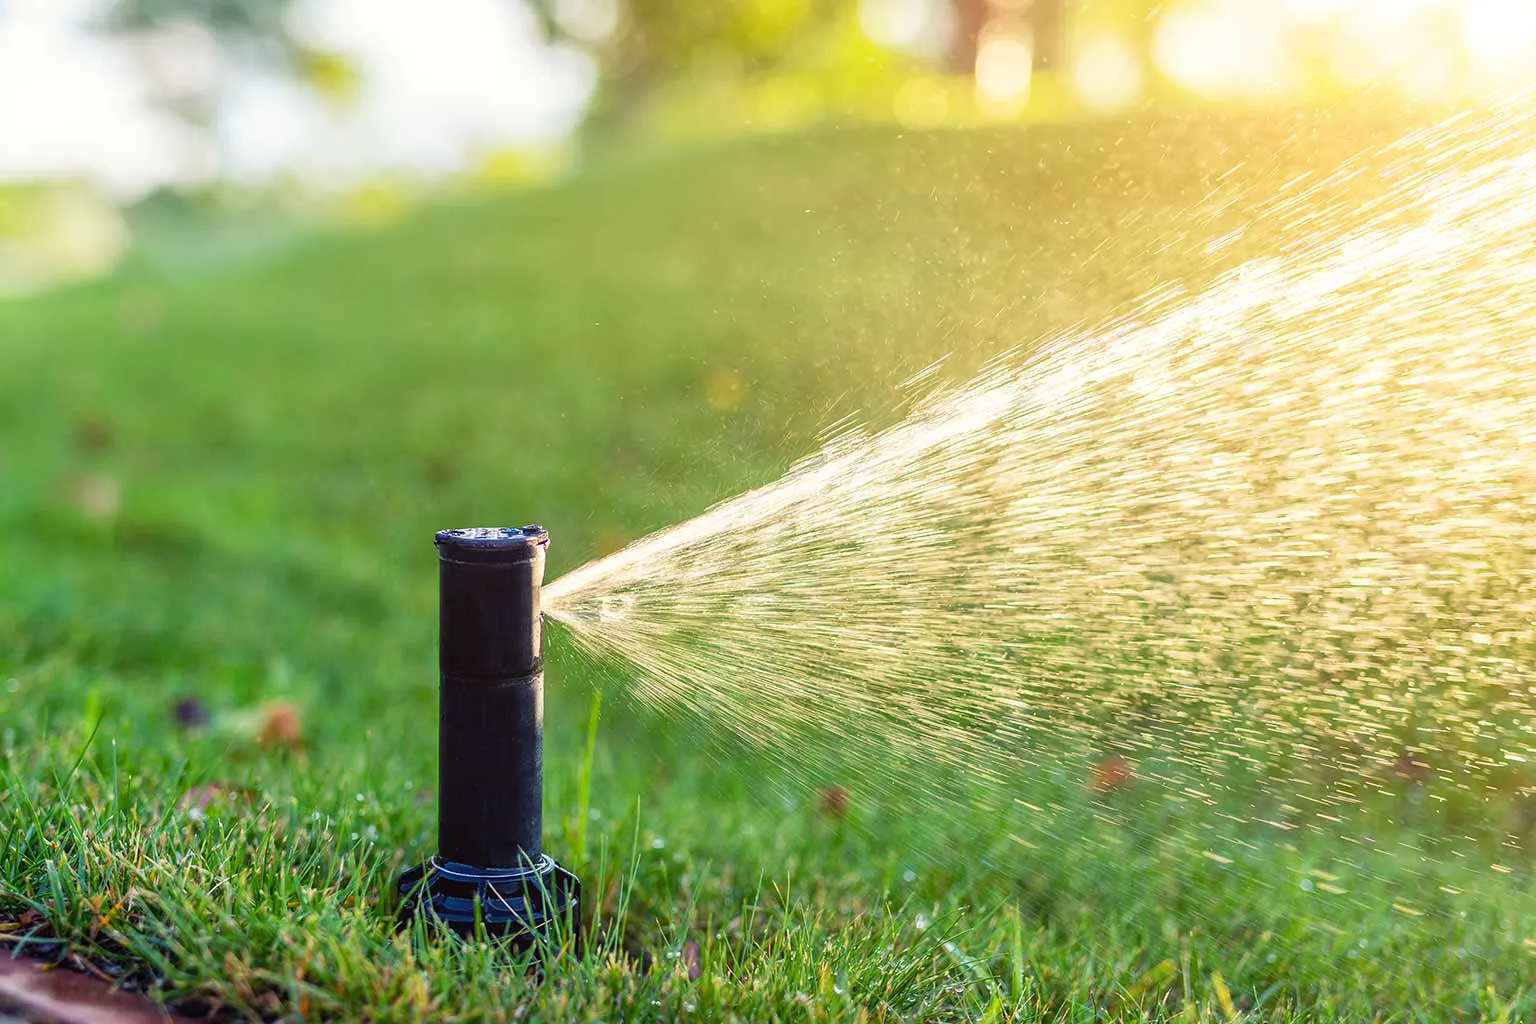 Irrigation system sprinkler watering a landscape lawn